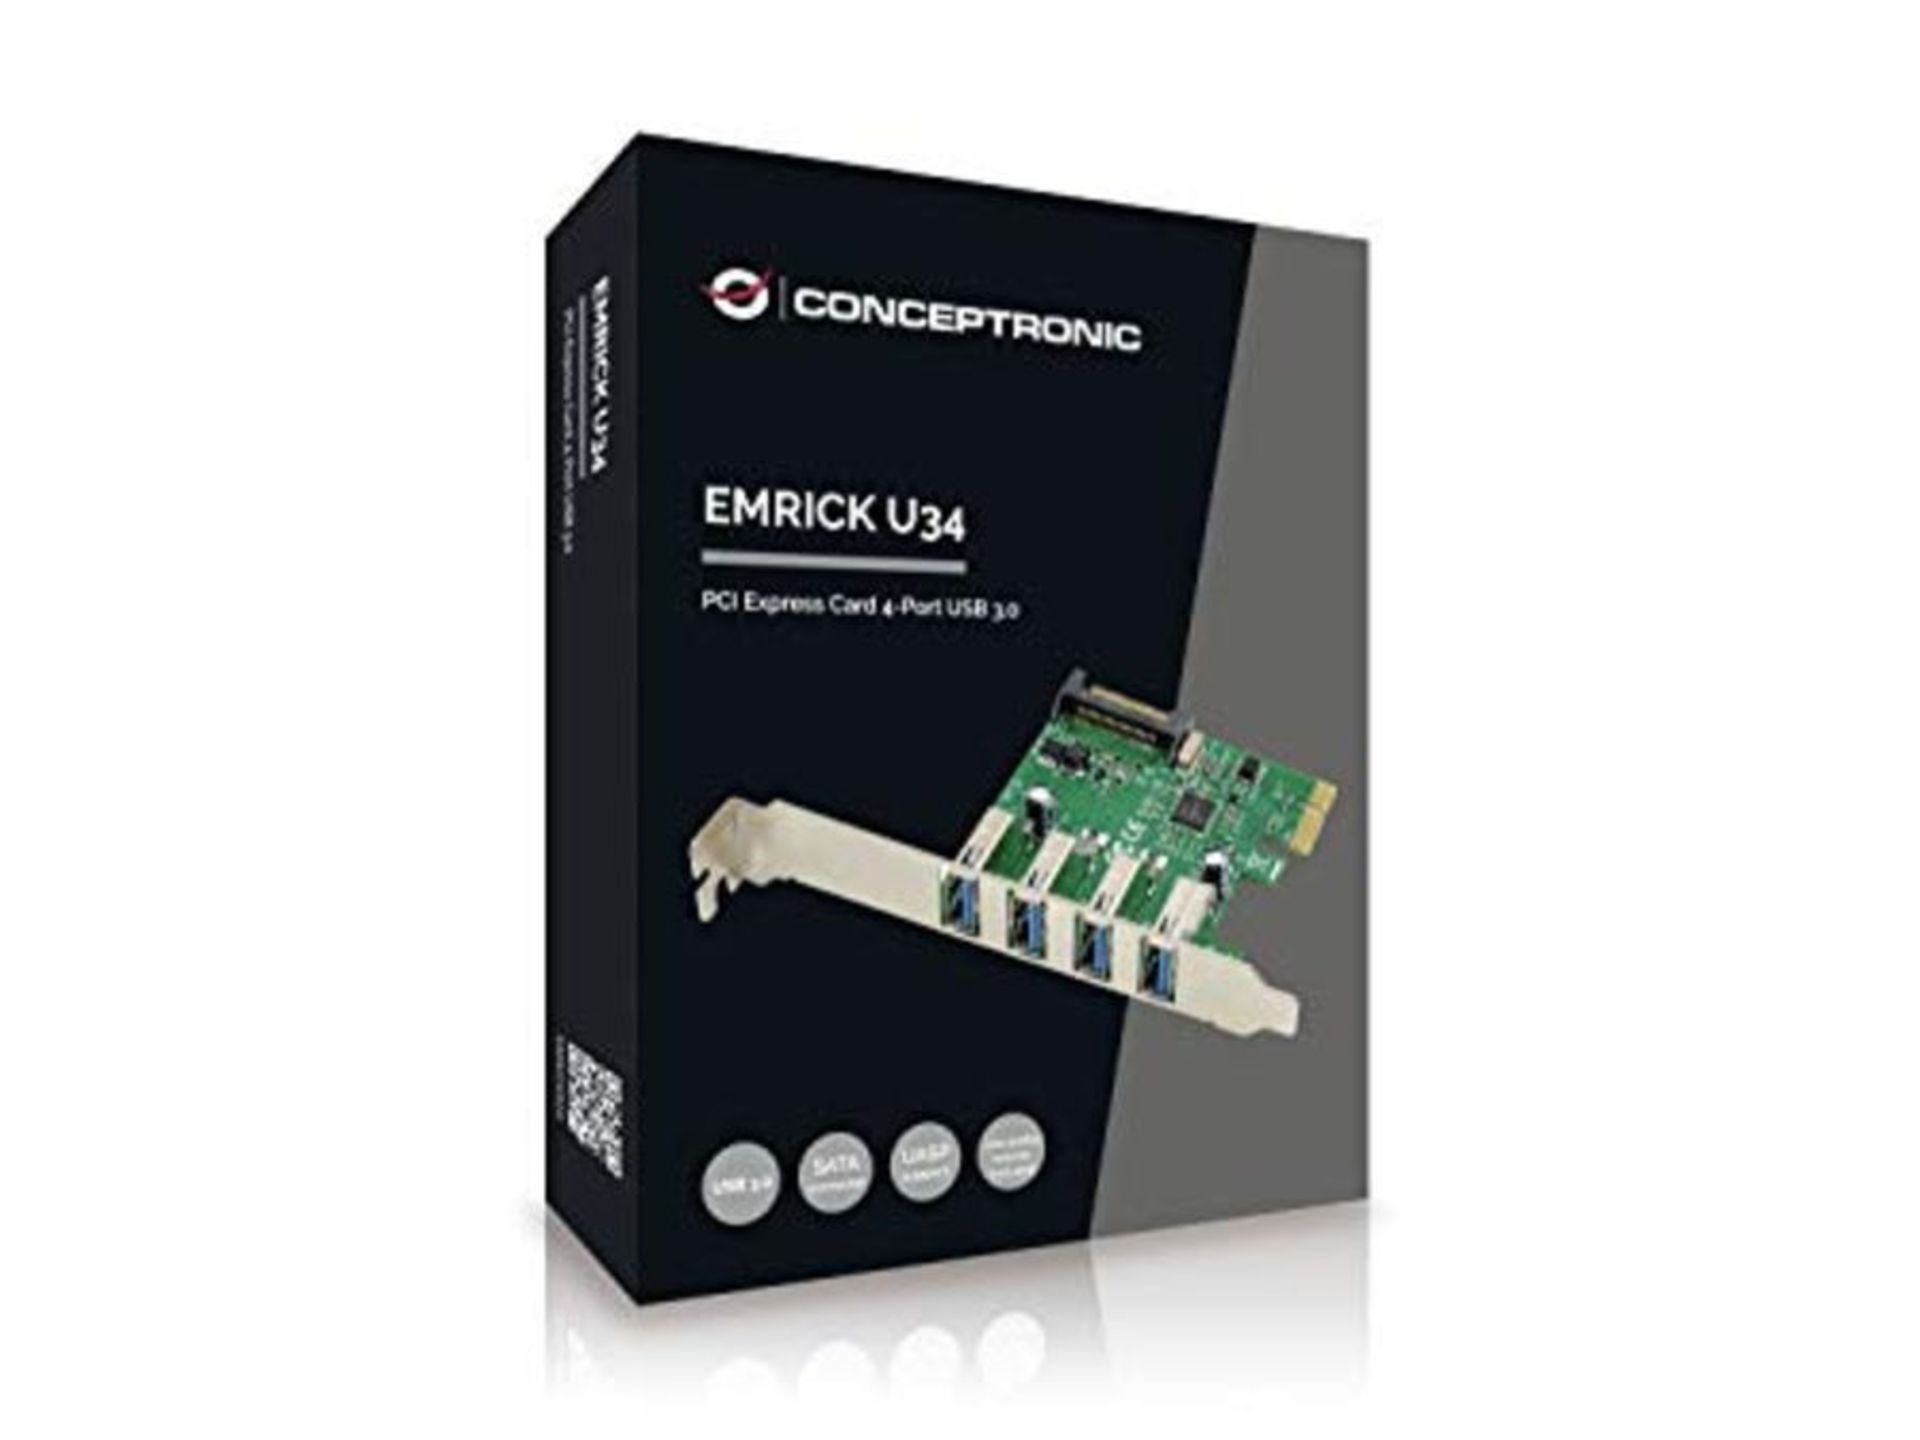 Conceptronic Emrick 4-Port USB 3.0 PCI Express Card